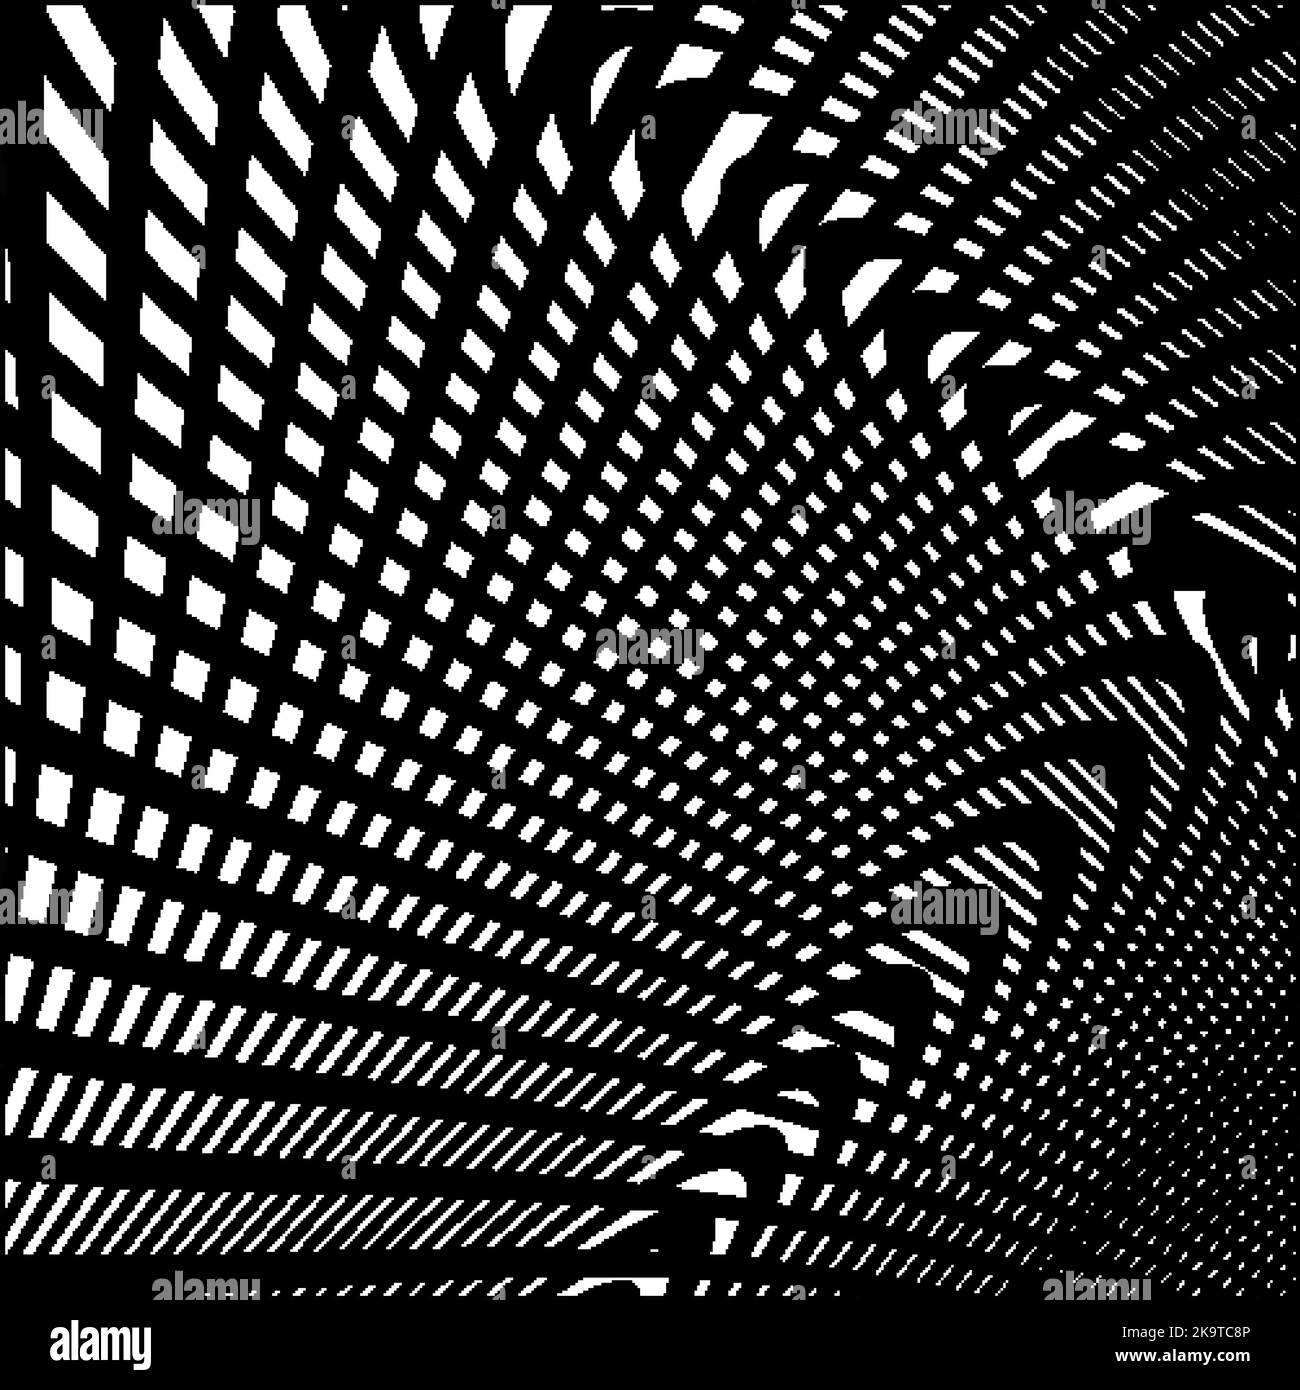 Abstrakter Hintergrund mit schwarzen und weißen Streifen, Vektor-Design-Element. Stock Vektor